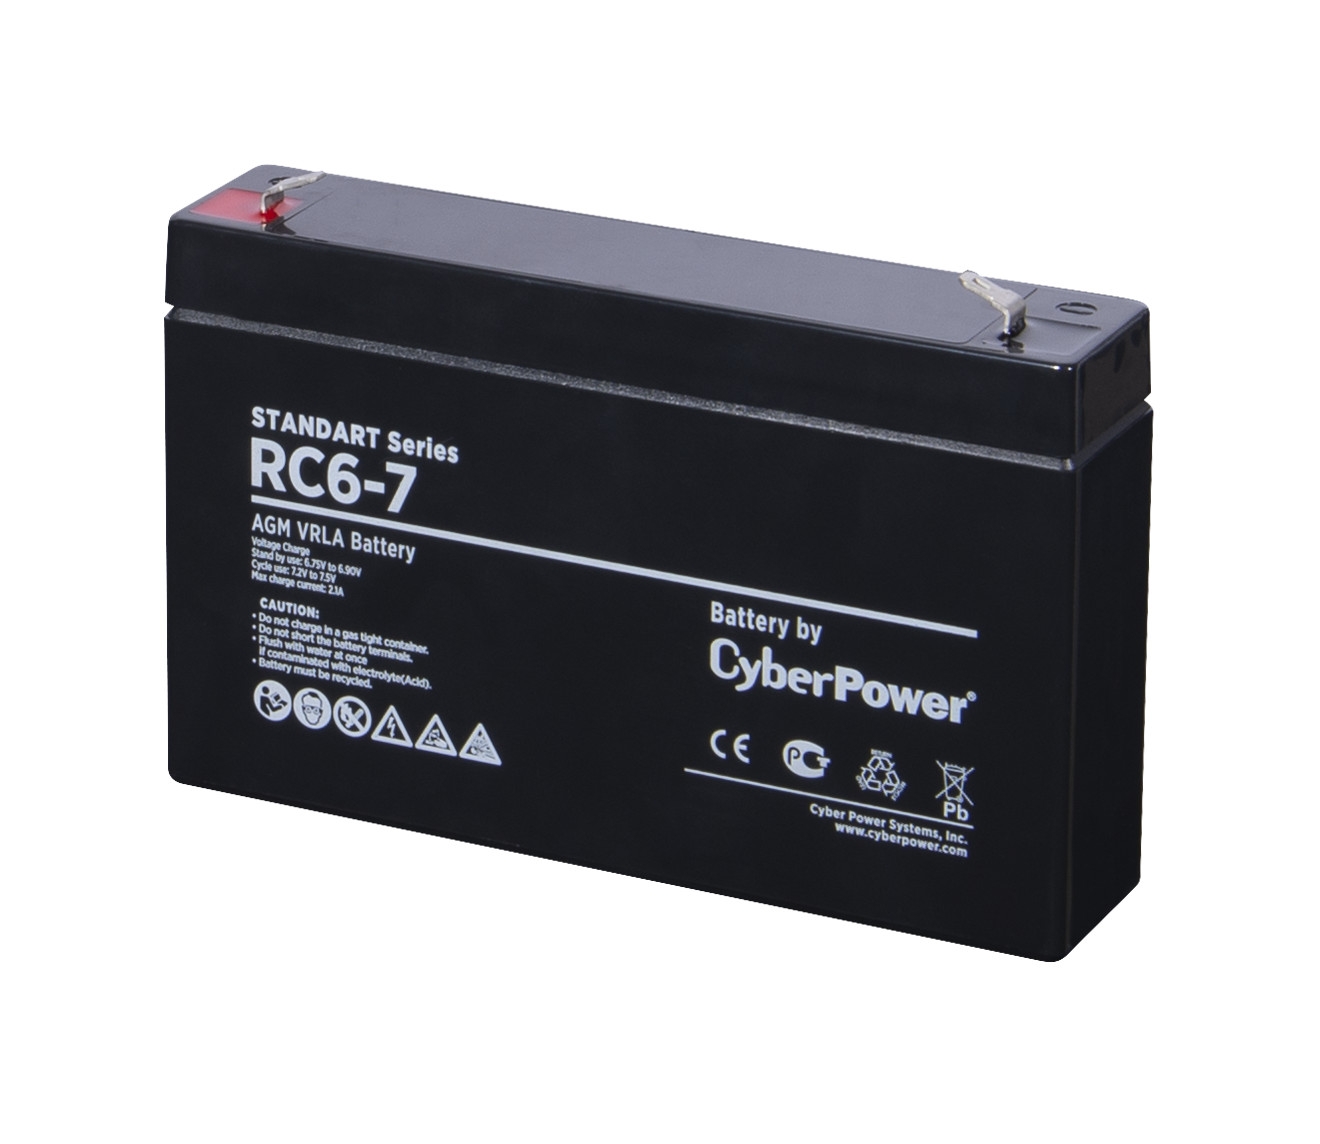 Батарея для ИБП CyberPower Standart series RC 6-7 cp new настоящая аккумуляторная батарея для ноутбука c21n1408 7 6 v 37wh для vivobook 4000 mx555 v555l v555lb v555u series